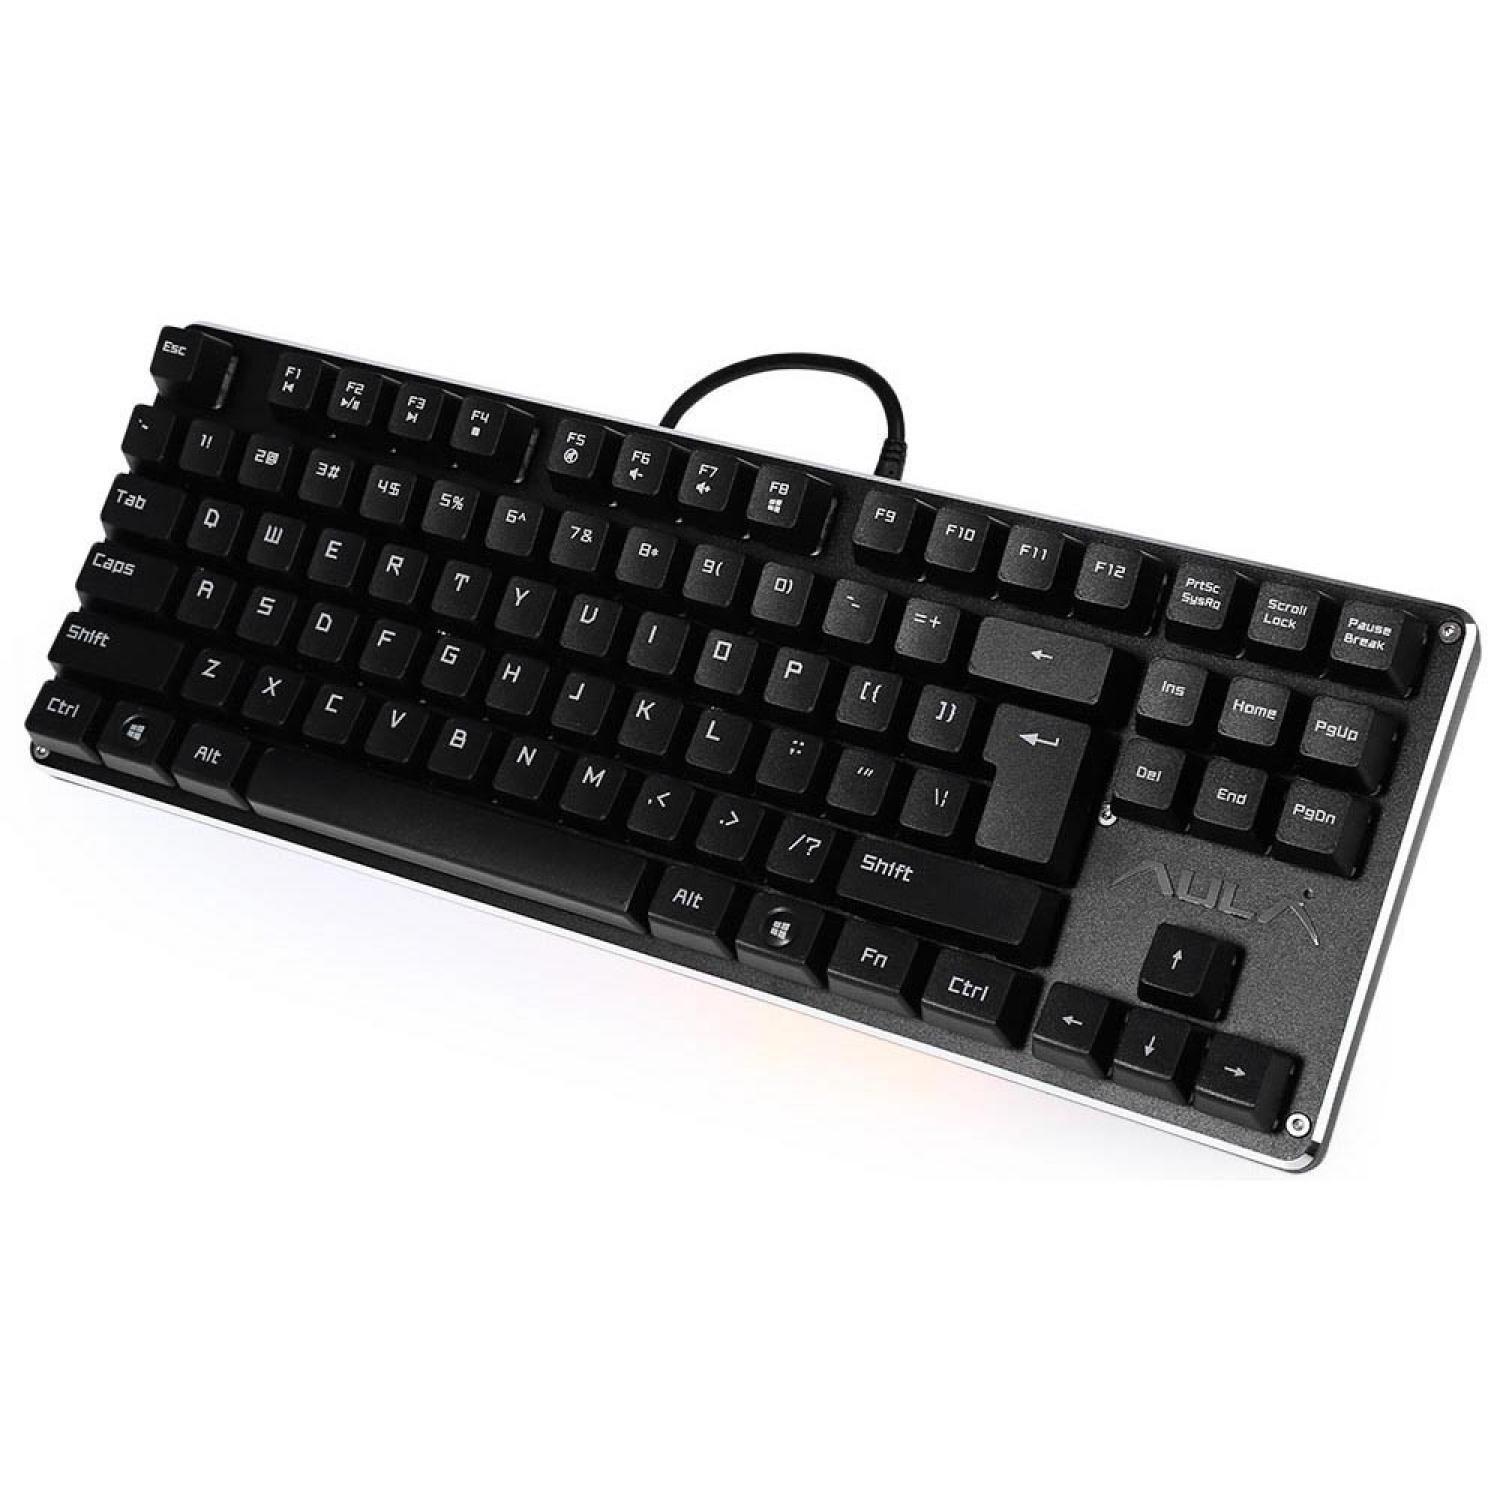 Aula Gaming Mechanical Keyboard - SI-2012